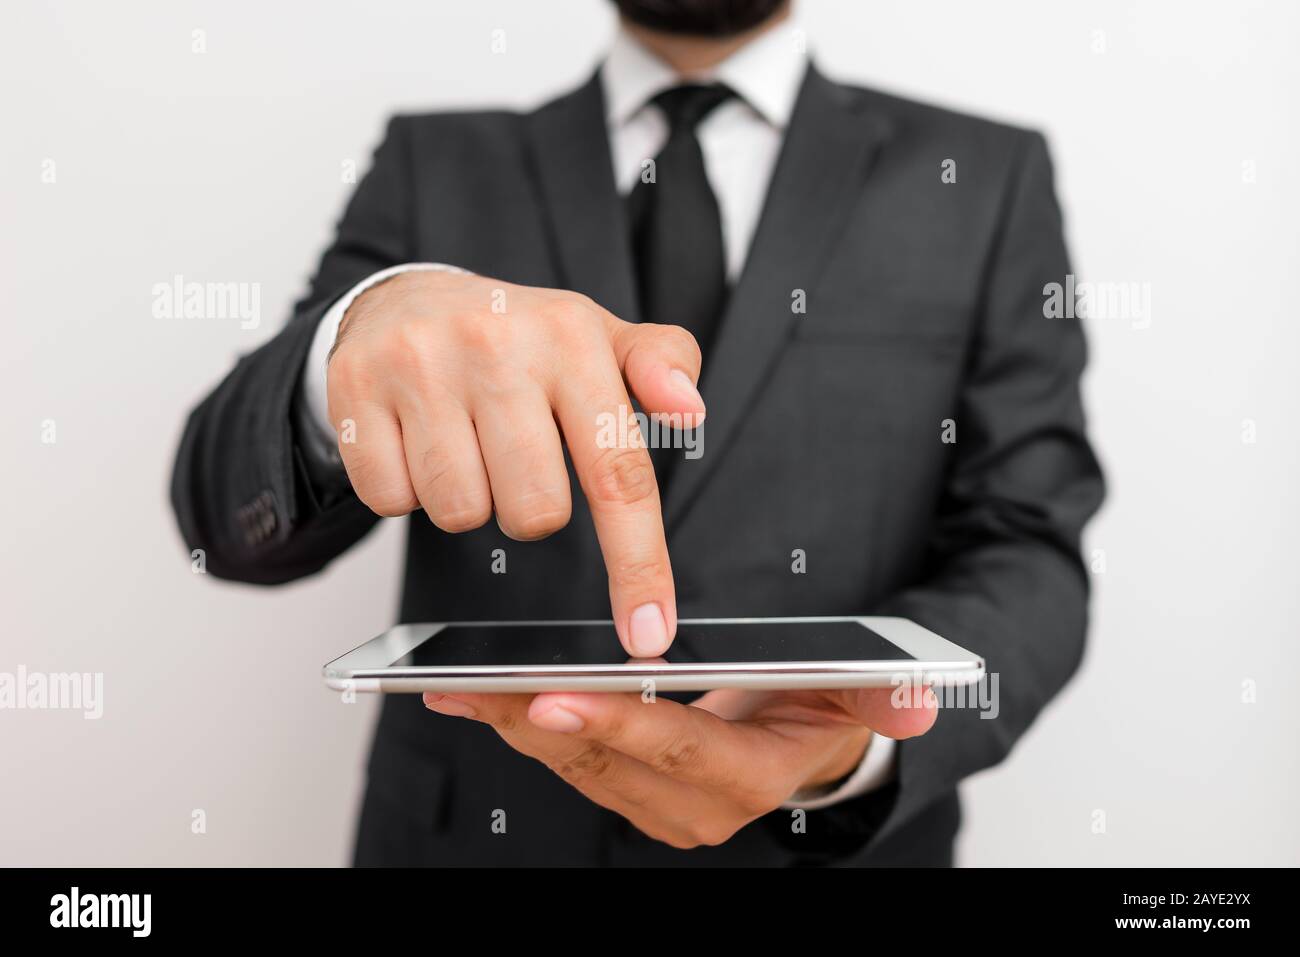 Homme vêtements de travail habillés vêtements de travail formels présentant la présentation d'un smartphone de haute technologie. Homme vêtu d'un costume de travail pl Banque D'Images